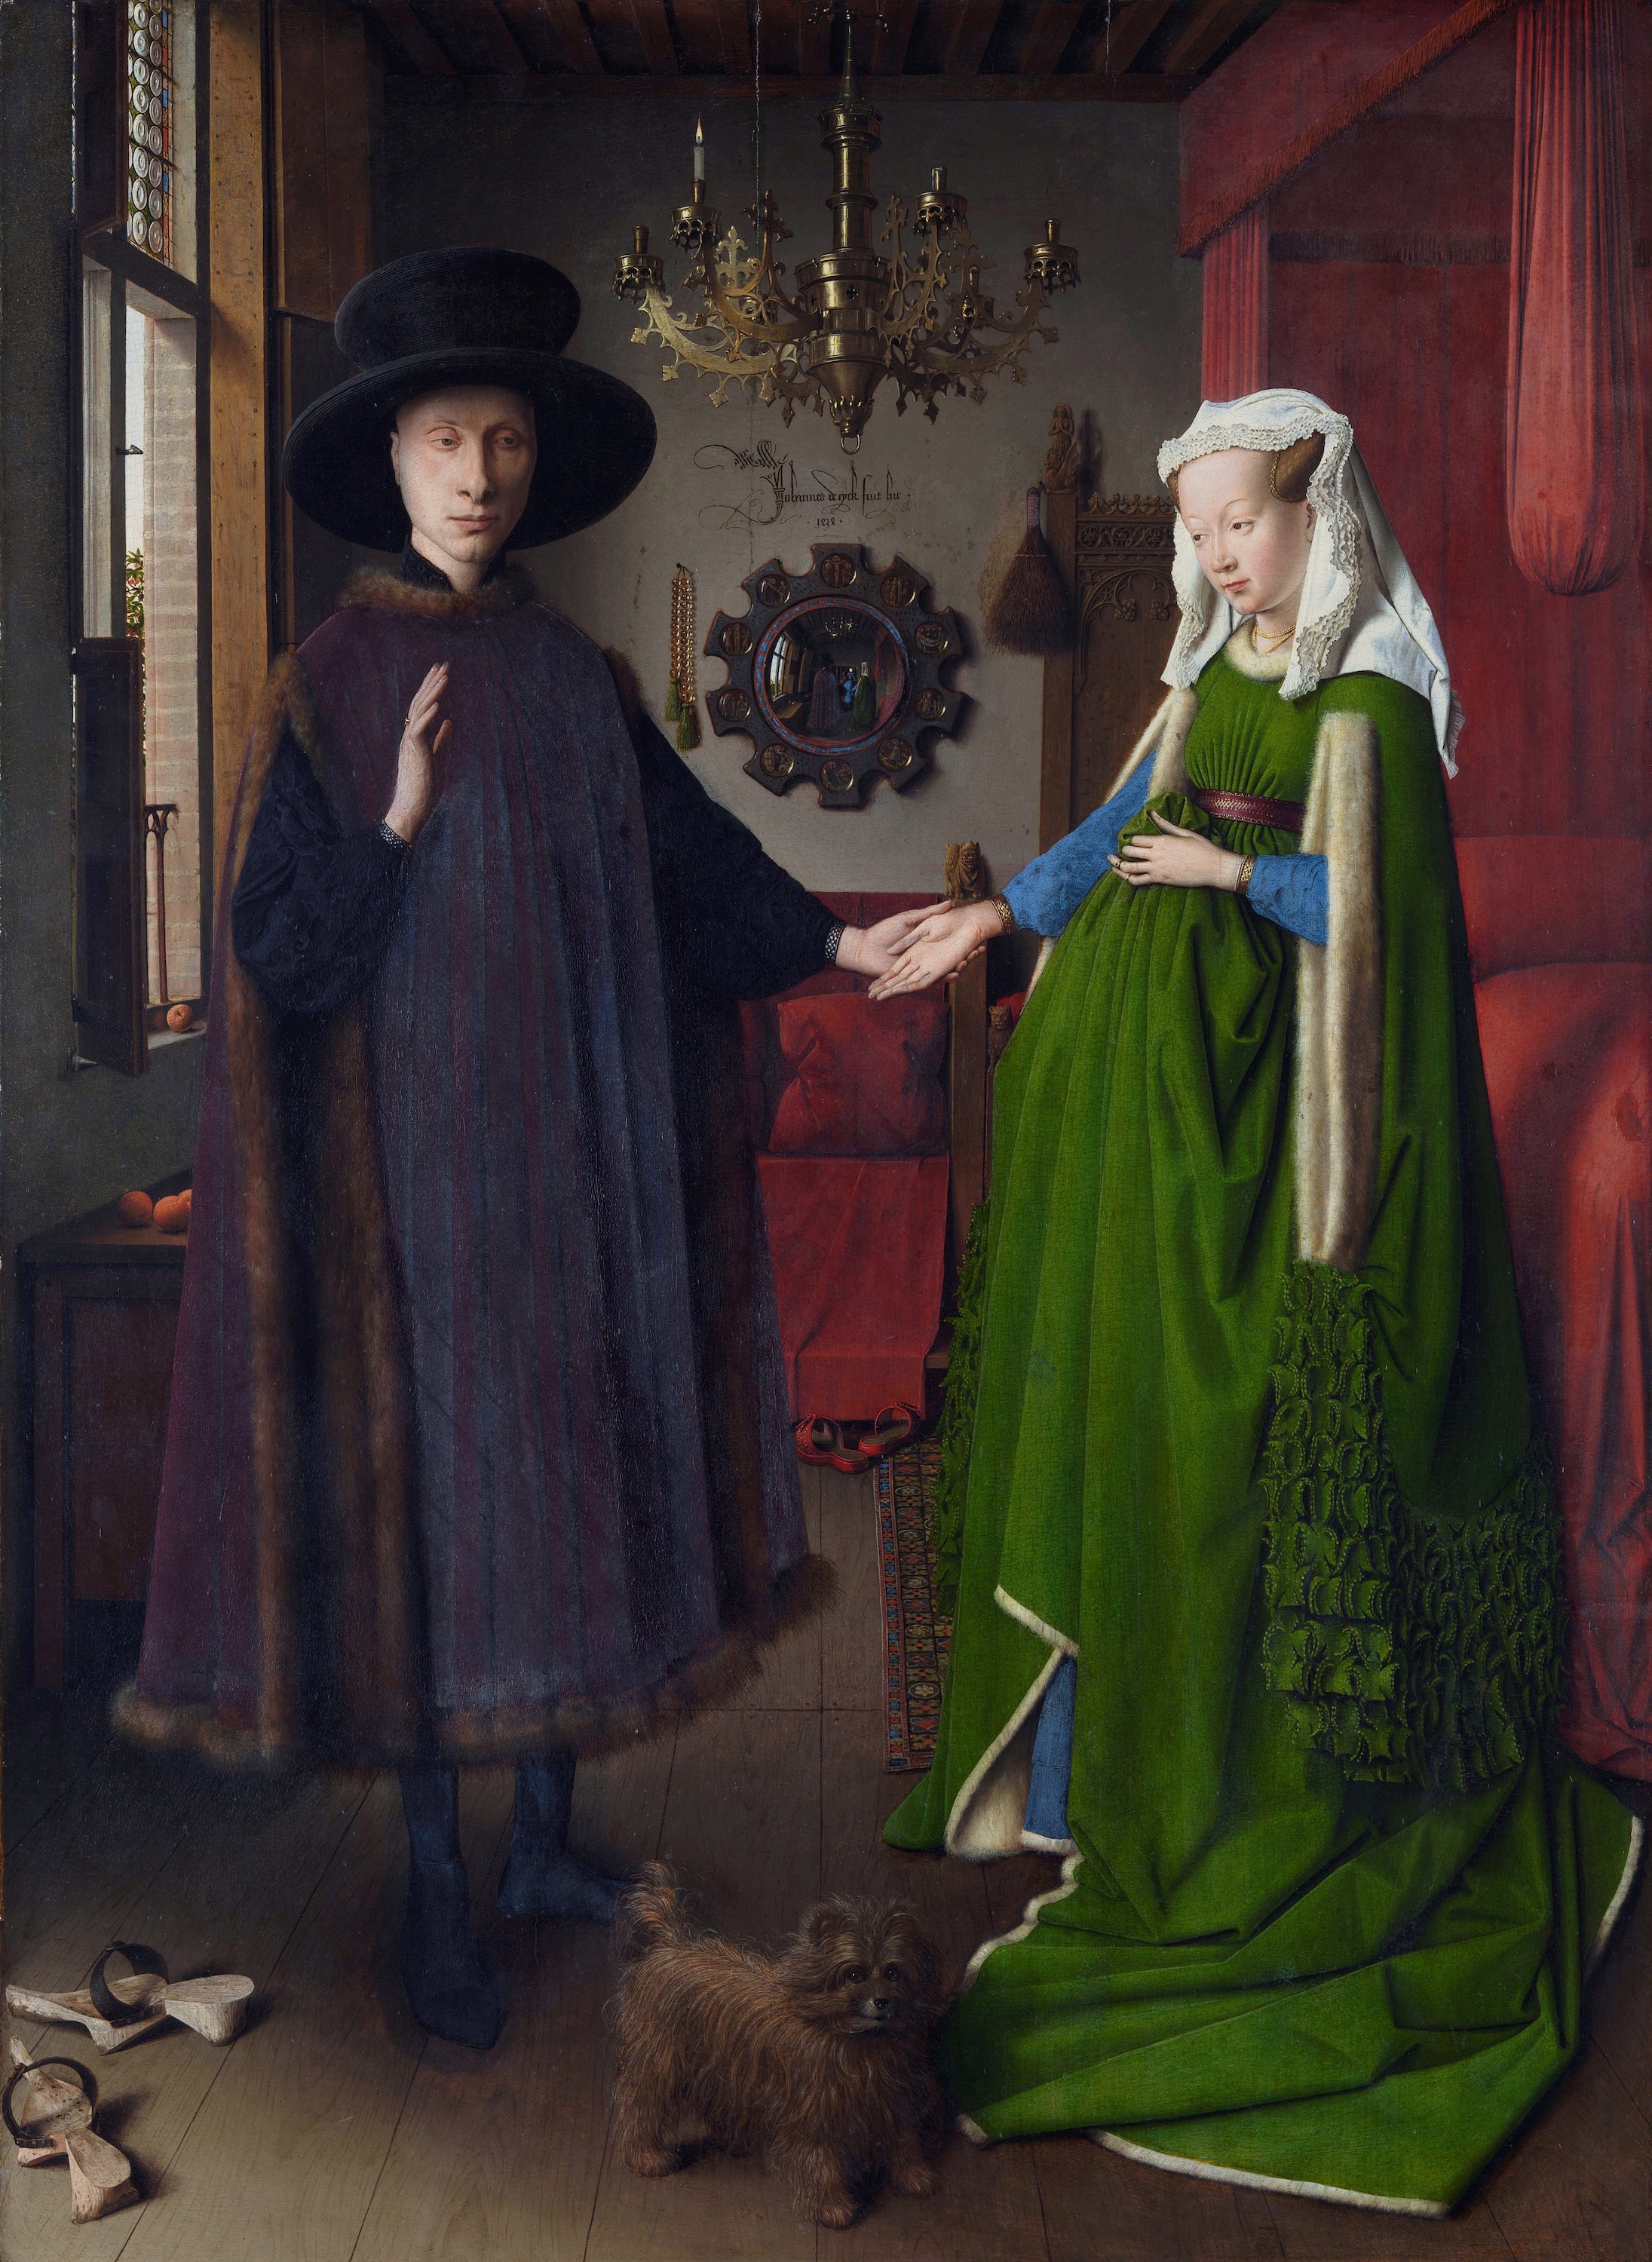 아르놀피니 부부의 초상 by Jan van Eyck - 1434 - 82 x 60 cm 